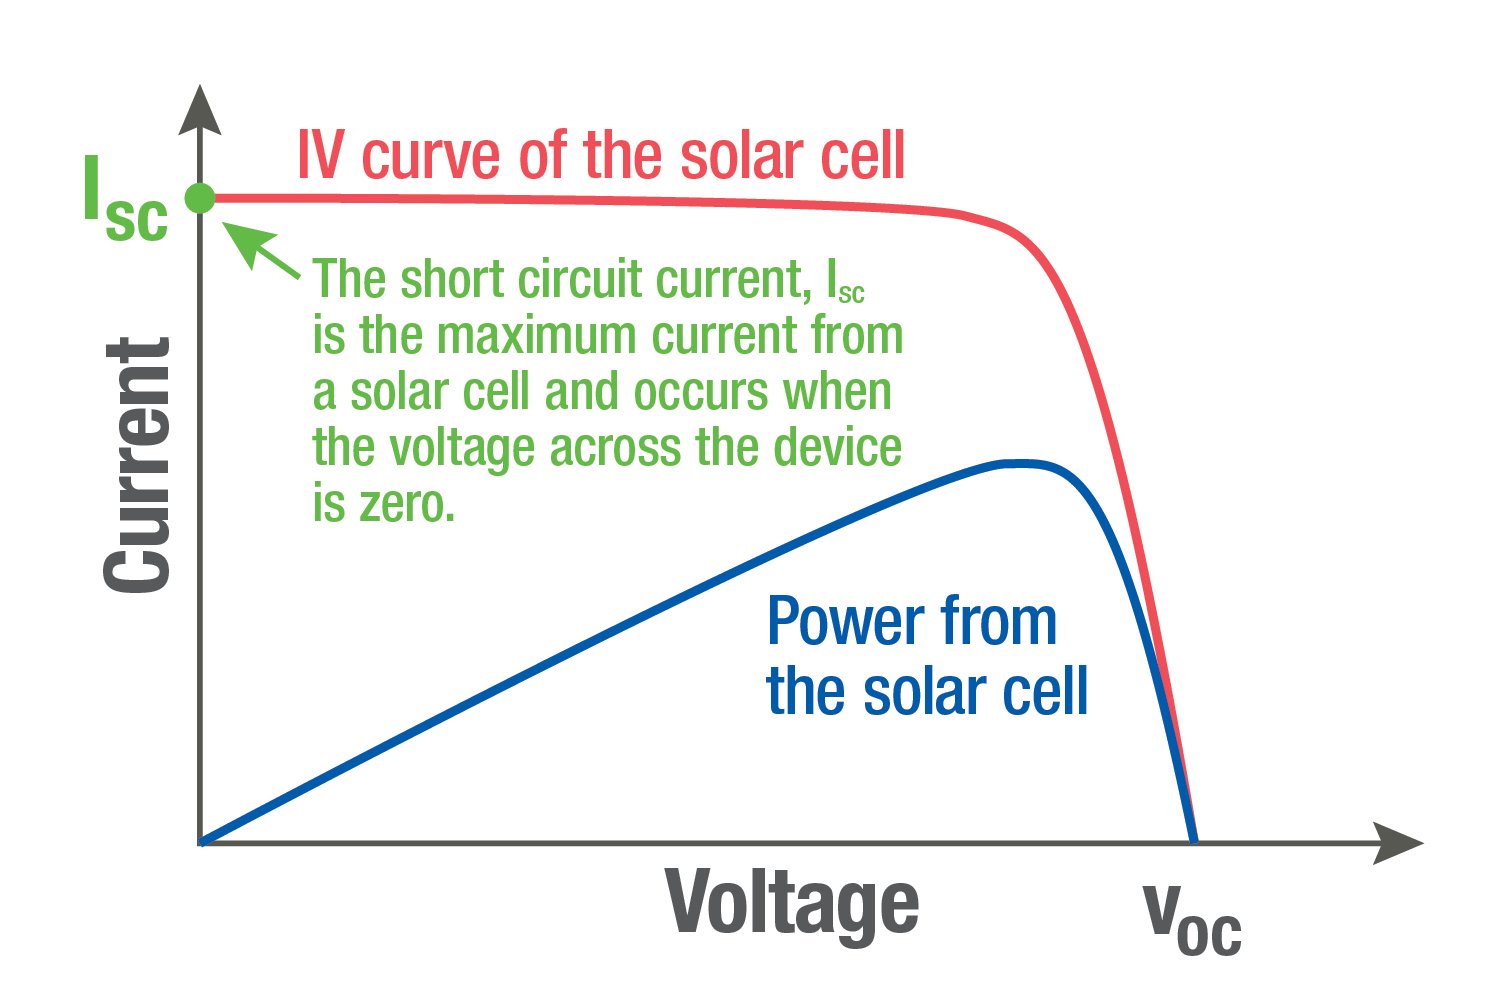 Gráfico que compara la curva IV de la celda solar con la potencia de la celda solar